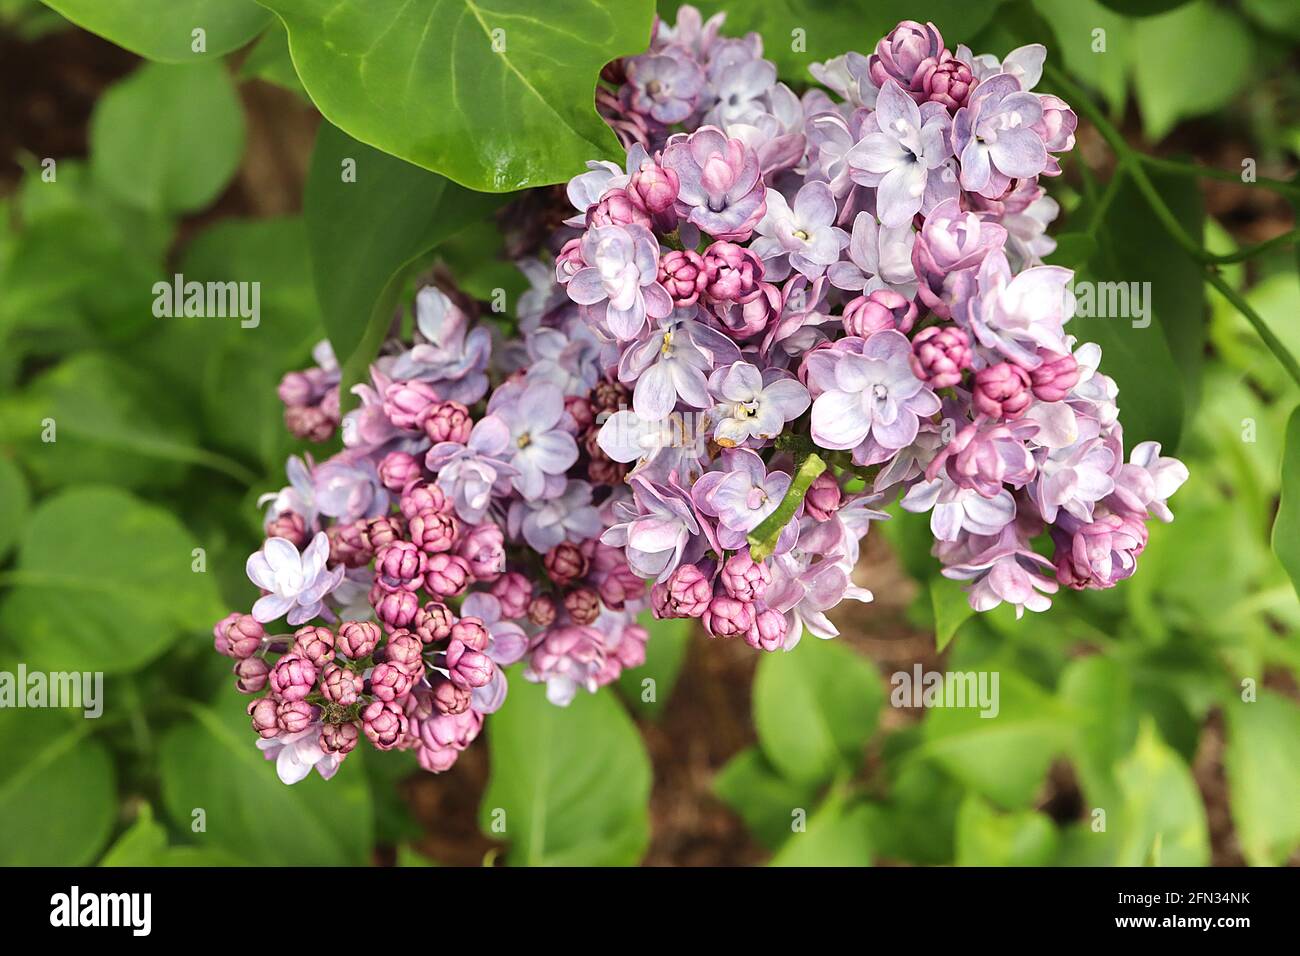 Syringa x hyazinthiflora ‘Scentara Double Blue’ Lilac Double Blue – duftende, doppelt rosa und weiße Blüten auf blauen Stielhaufen, Mai, England, Großbritannien Stockfoto